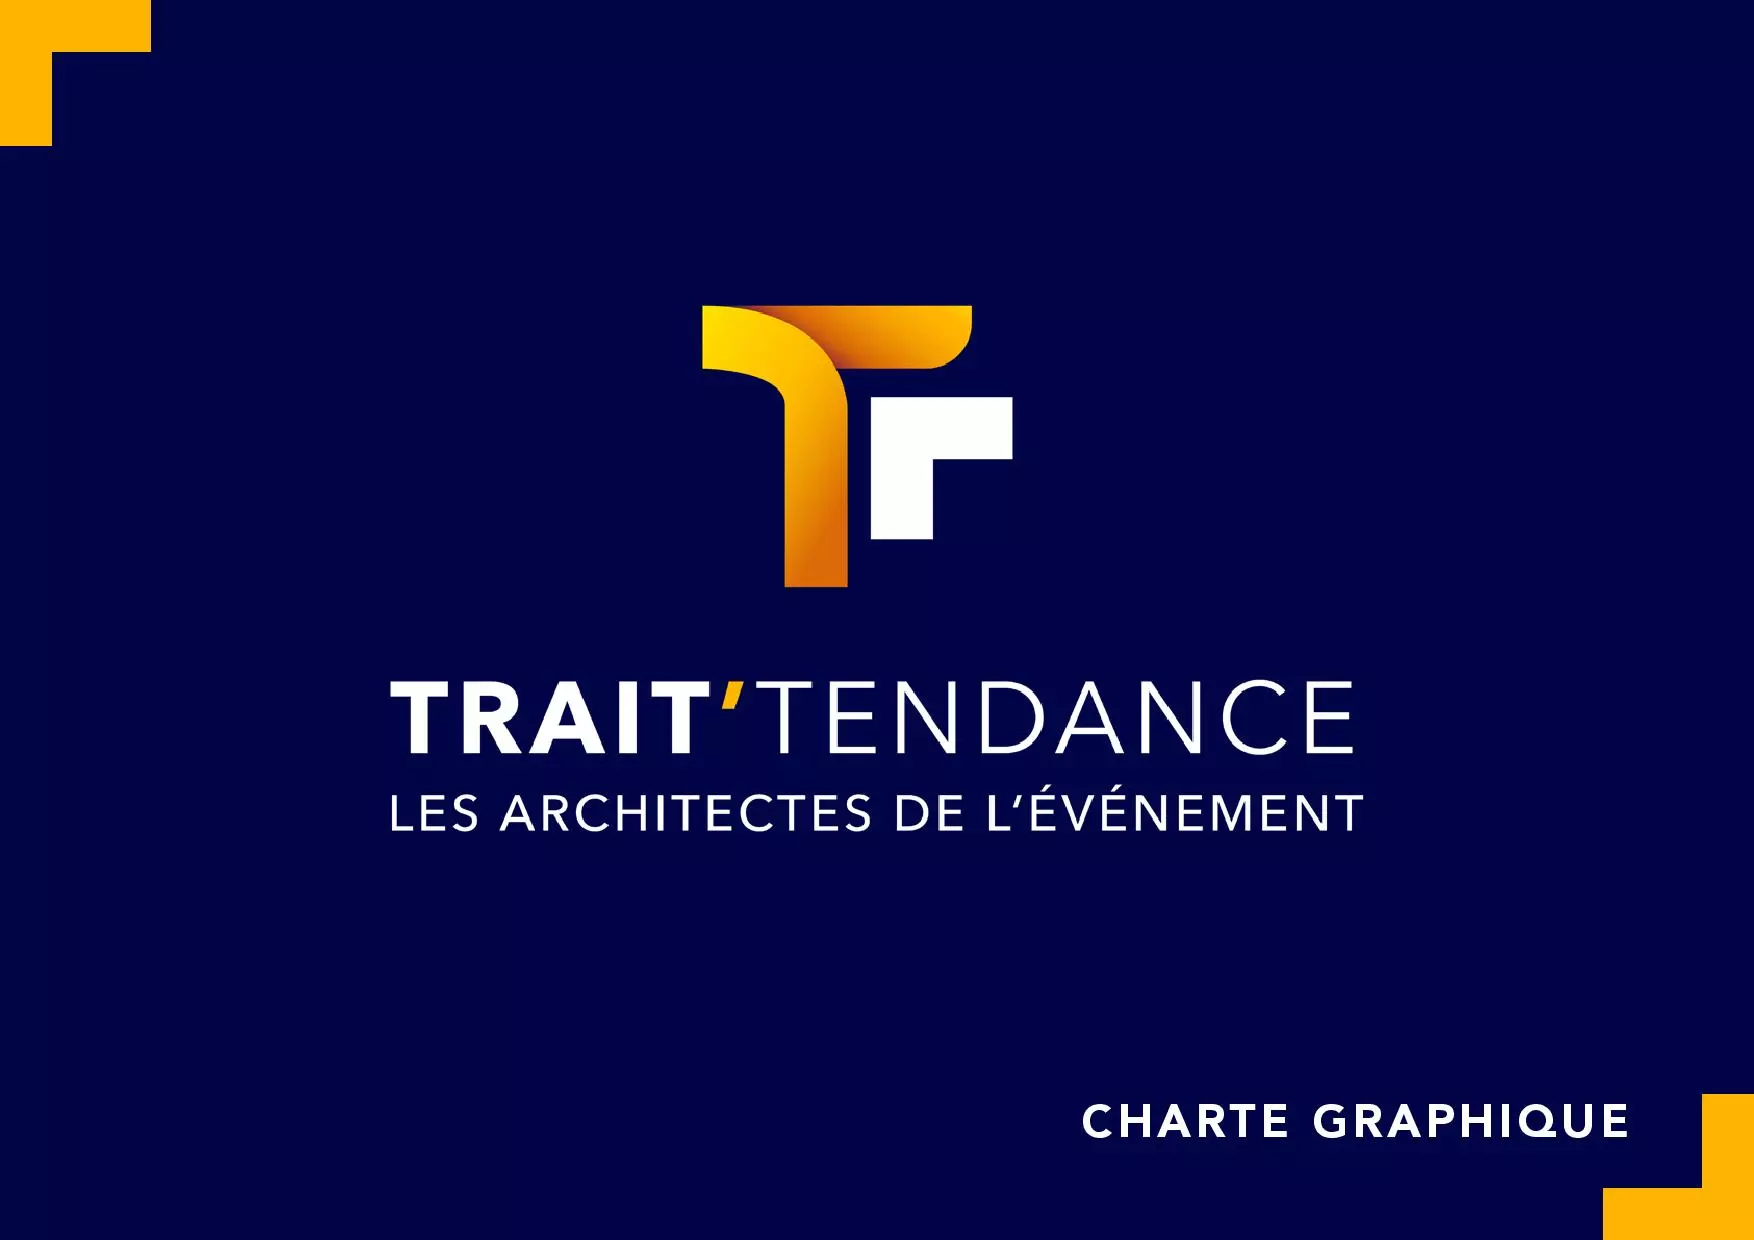 Charte graphique Trait Tendance.